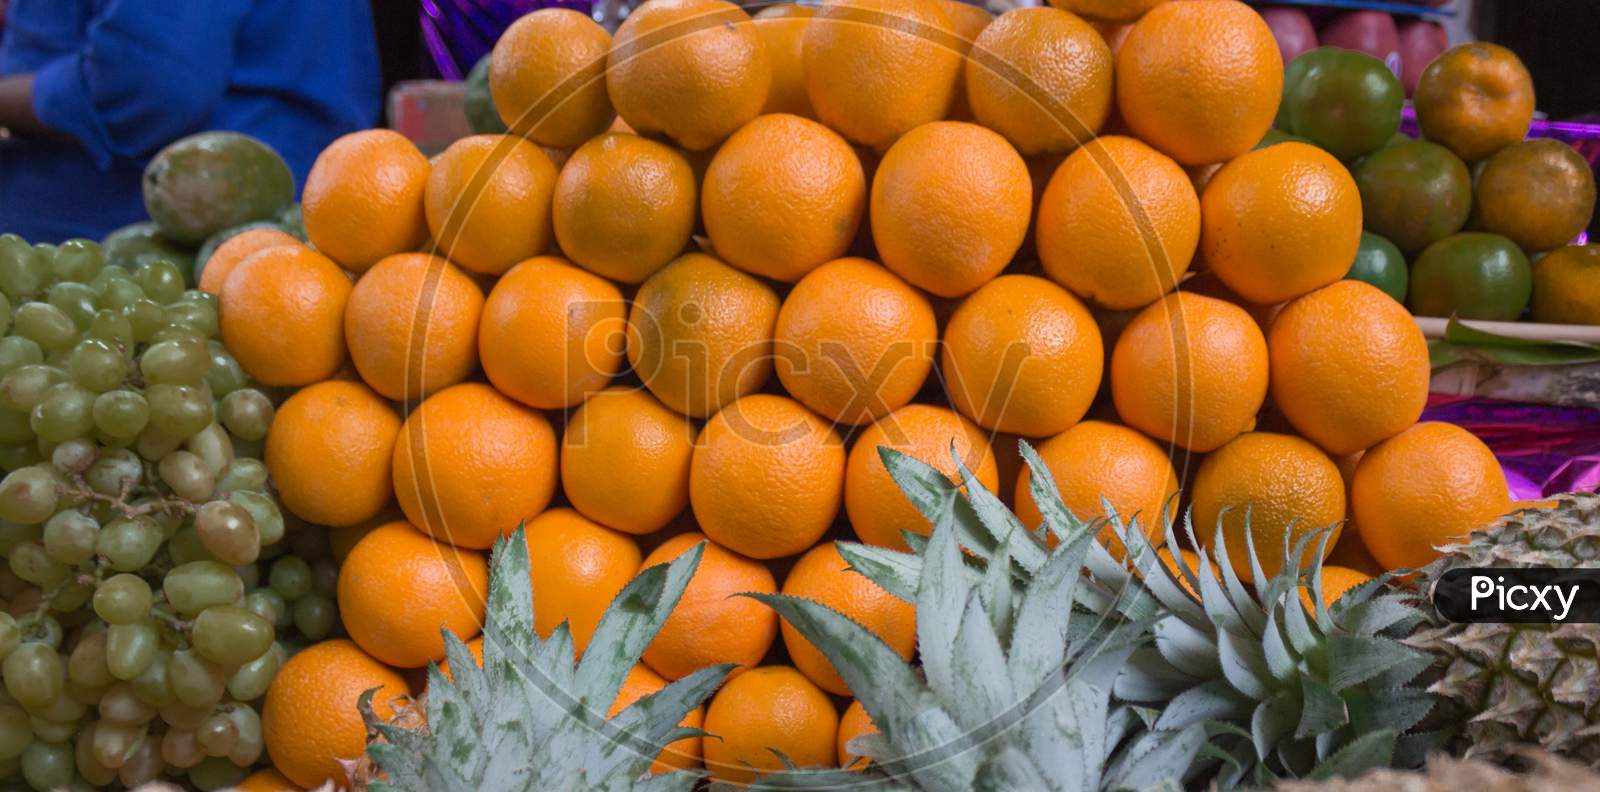 Fresh oranges in Mysore market in Karnataka/India.